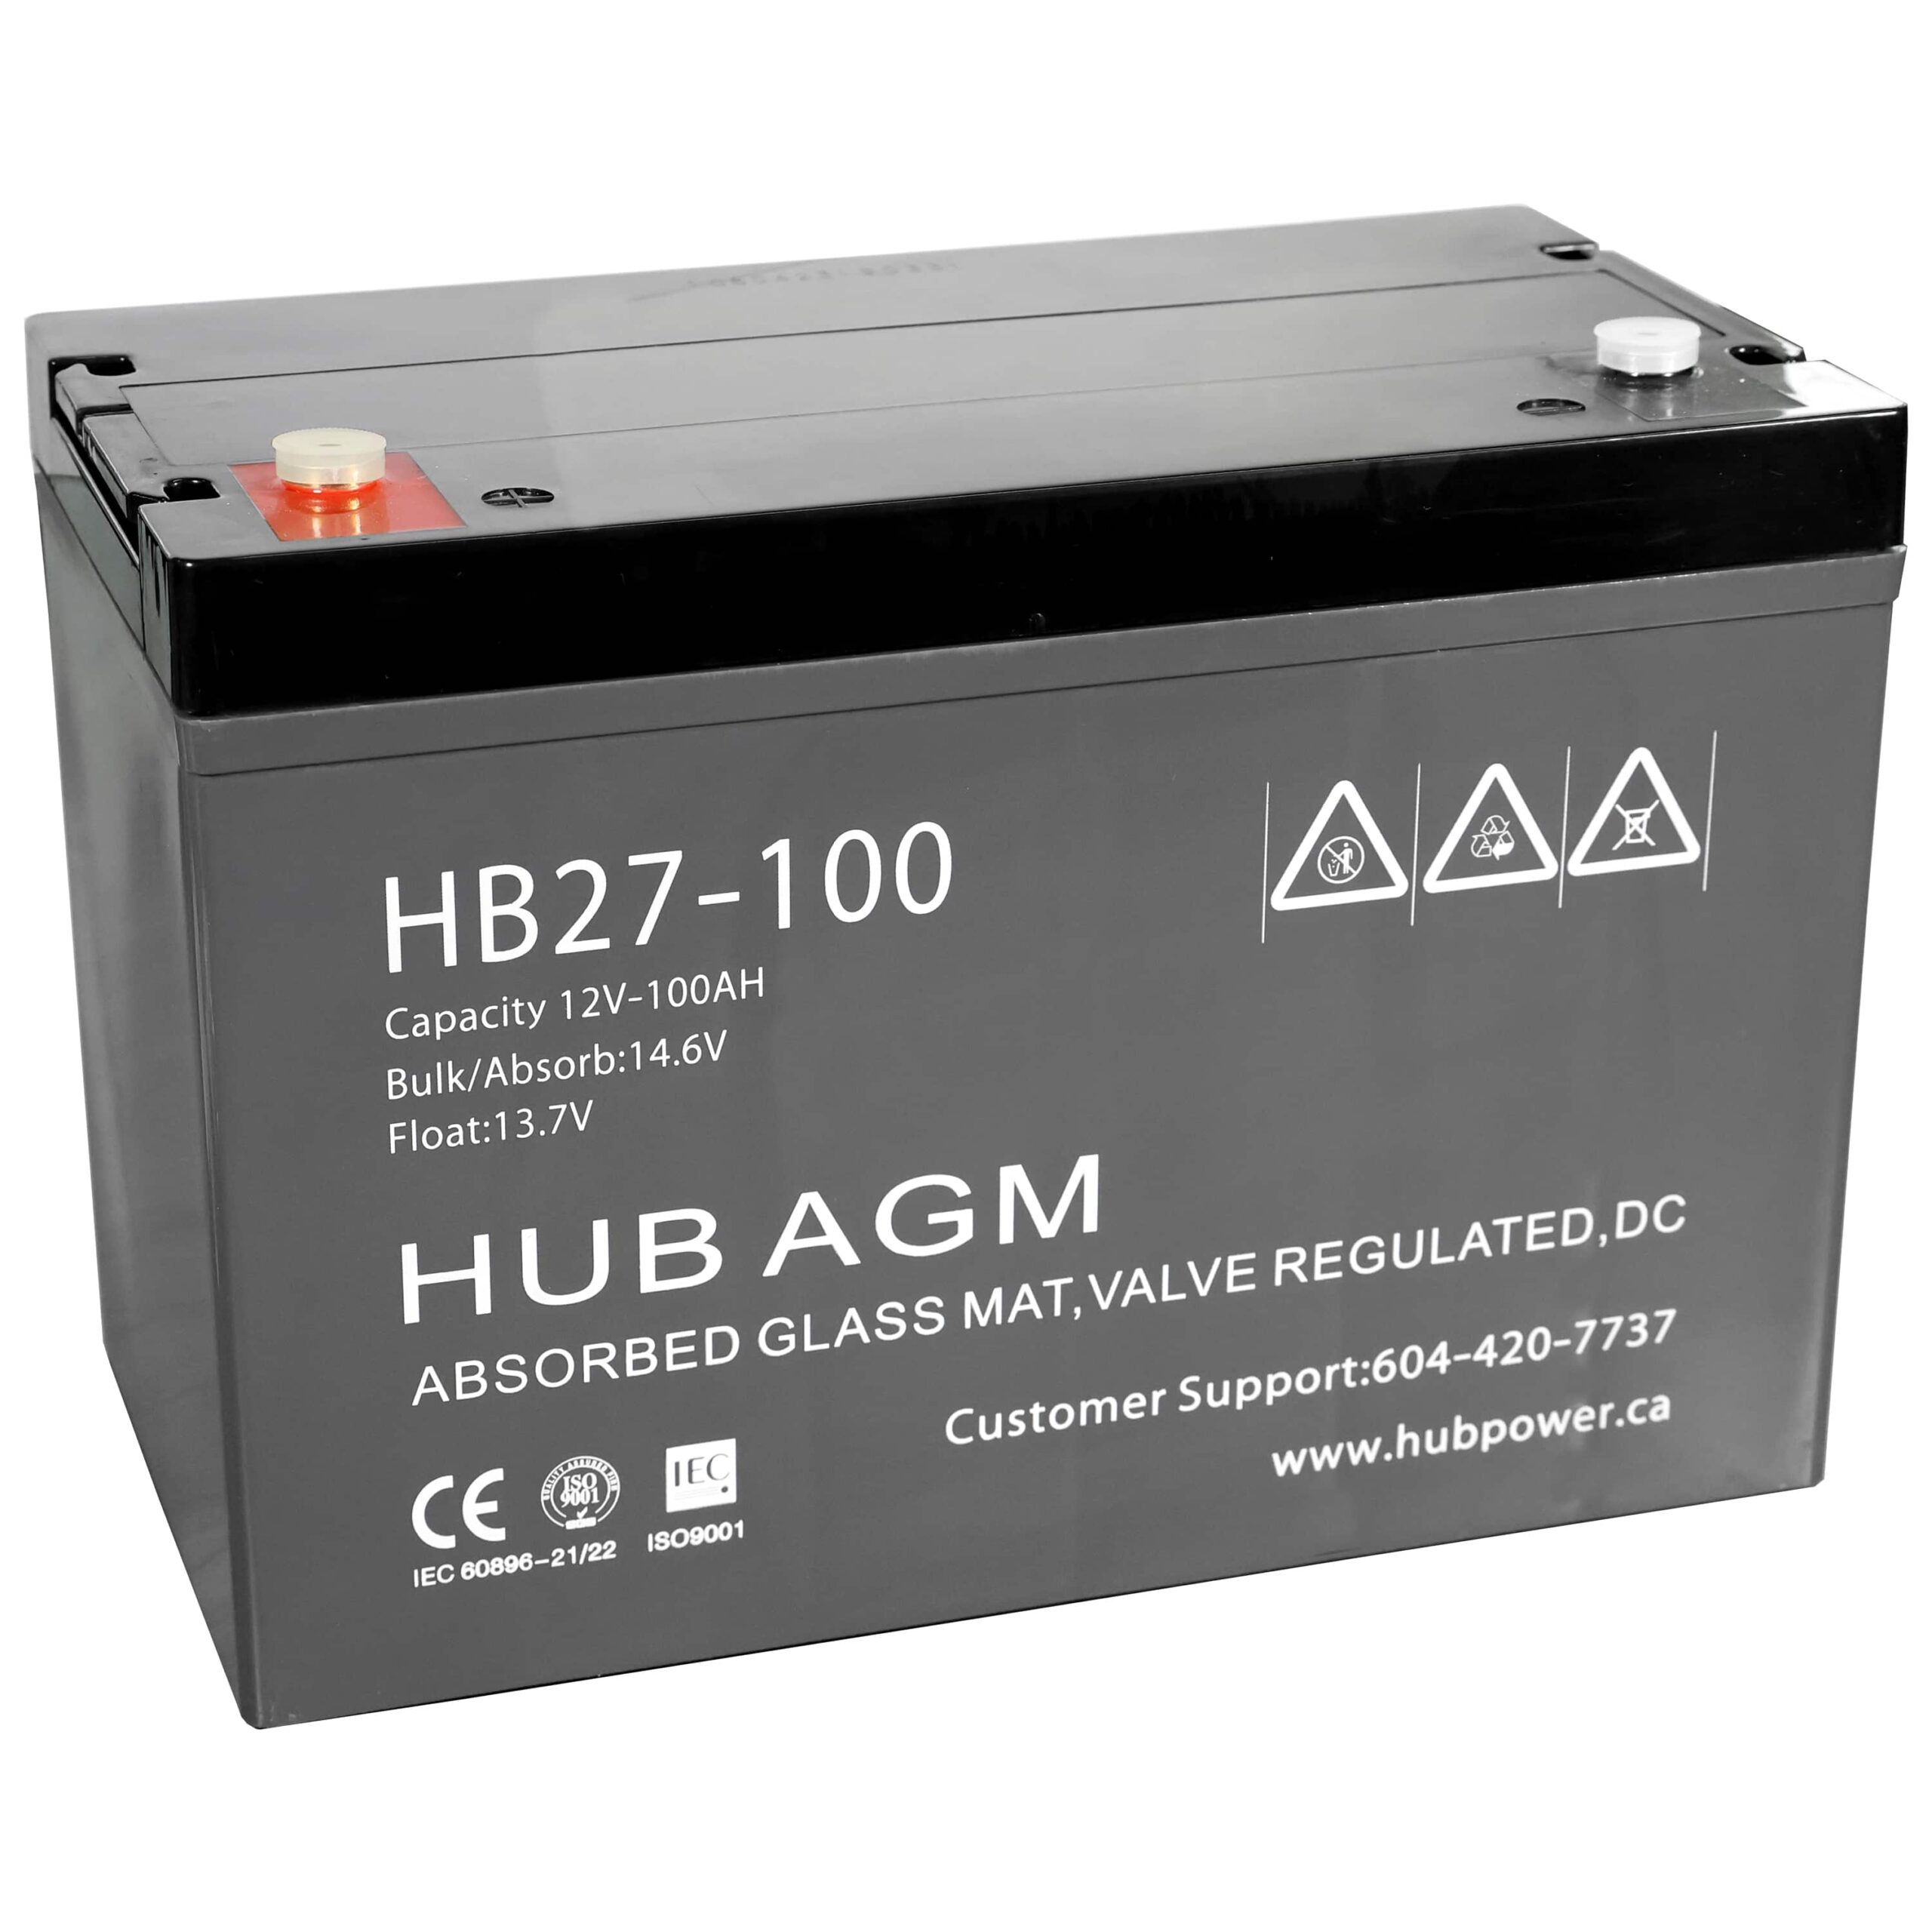 HB27-100